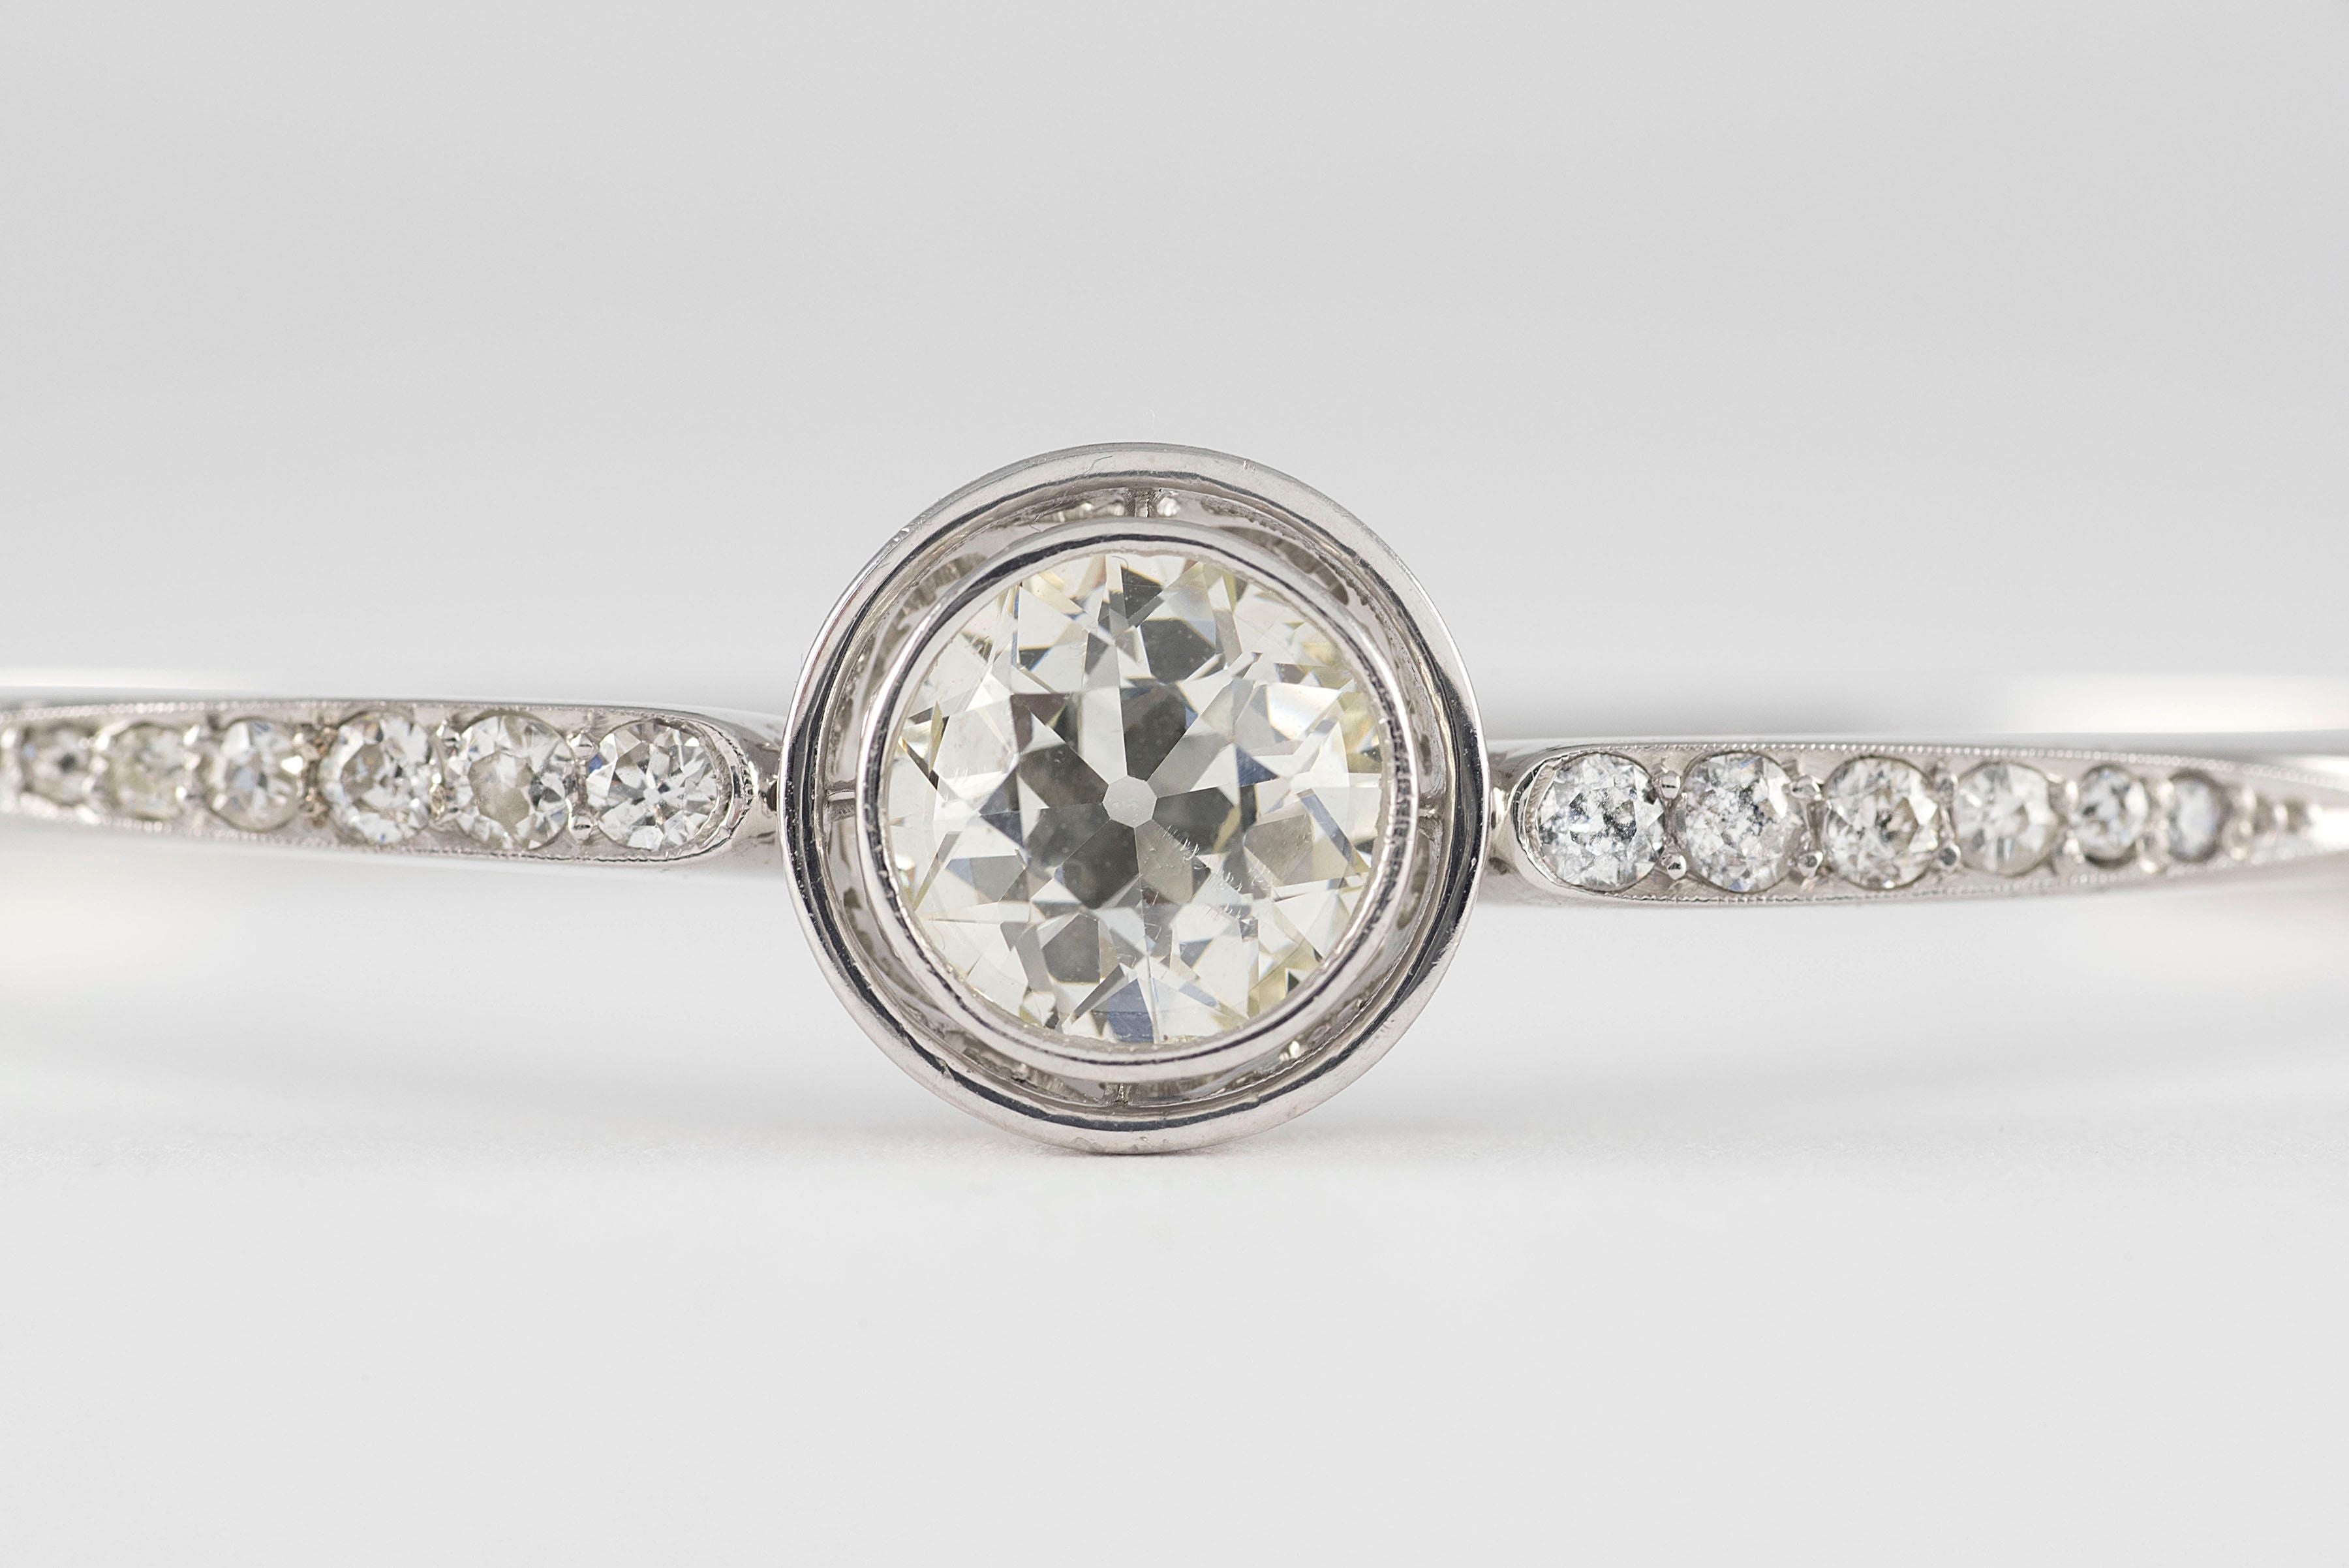 Ein alt-europäisch geschliffener Diamant von insgesamt ca. 2,32 Karat, Farbe K, Reinheit SI1 steht im Mittelpunkt dieses antiken Art-Déco-Armbands, das von zwölf Diamanten im Old-Mine-Schliff von insgesamt ca. 0,50 Karat flankiert wird und in